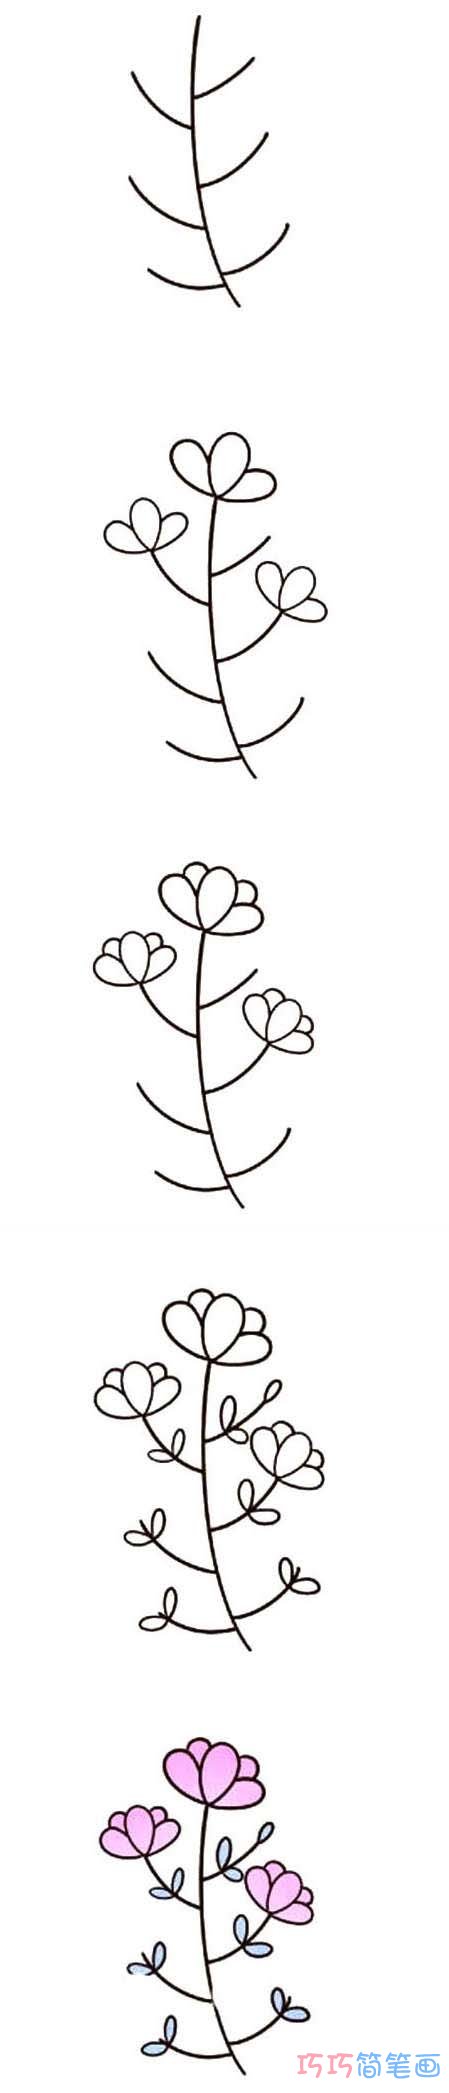 儿童简笔画漂亮小花朵的画法步骤图